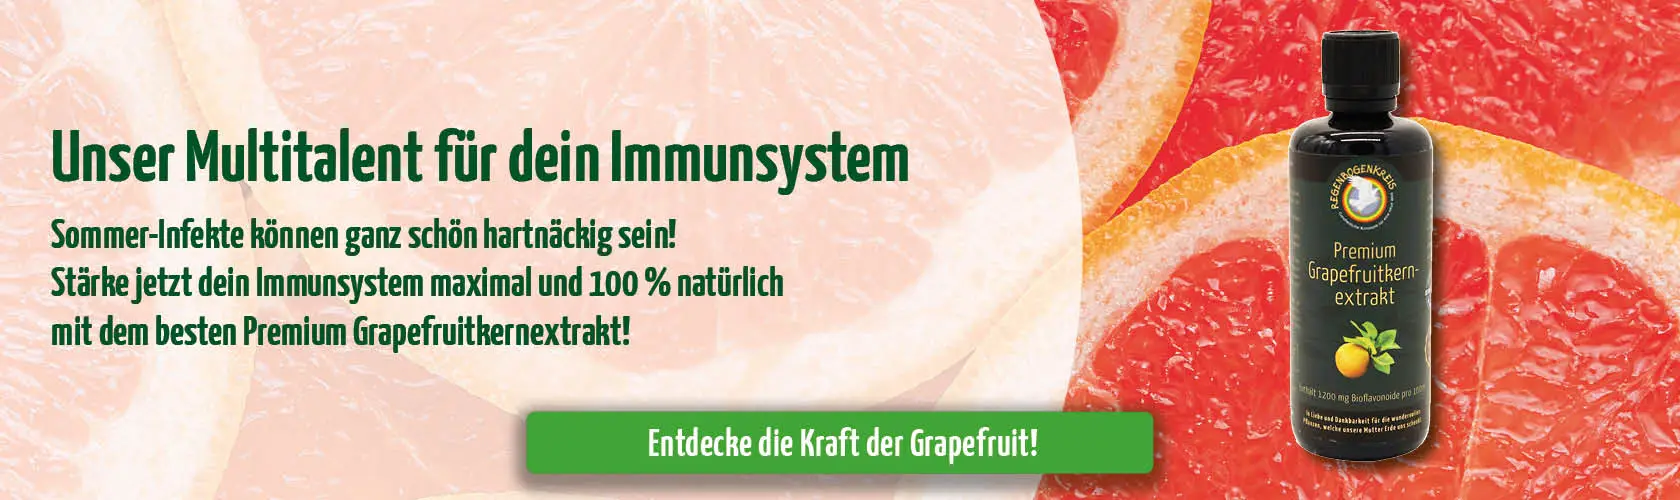 https://www.regenbogenkreis.de/premium-grapefruitkernextrakt-100ml/